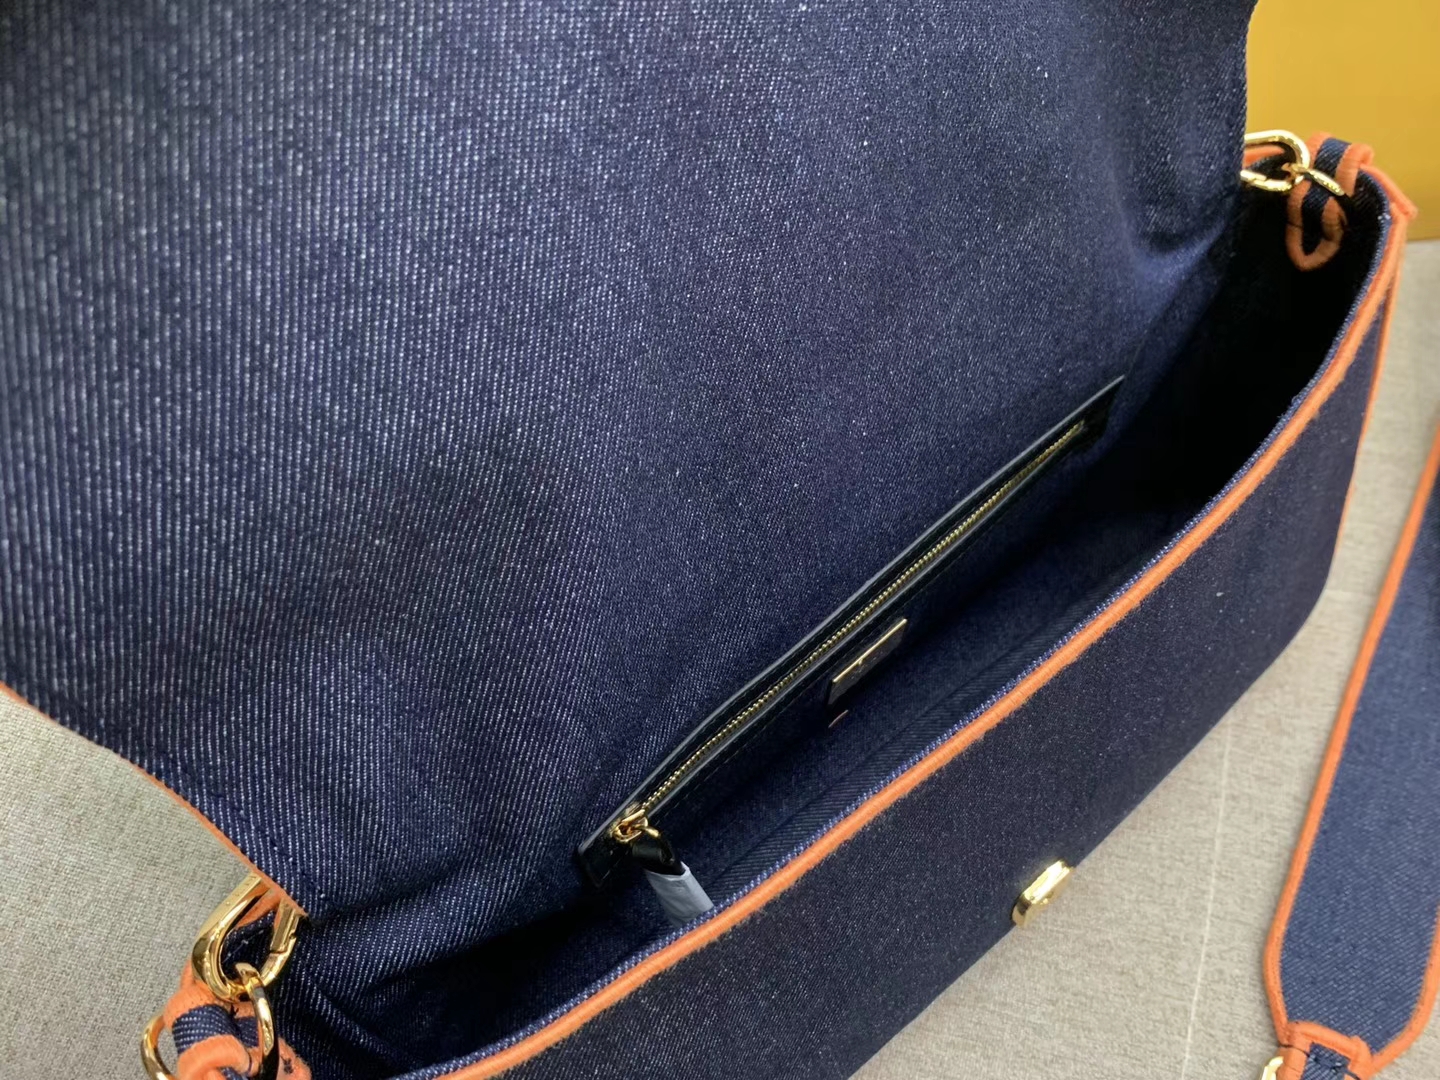 Baguette 系列 牛仔布材质 橙色刺绣边缘 内衬配有拉链袋 33x18x5.5cm